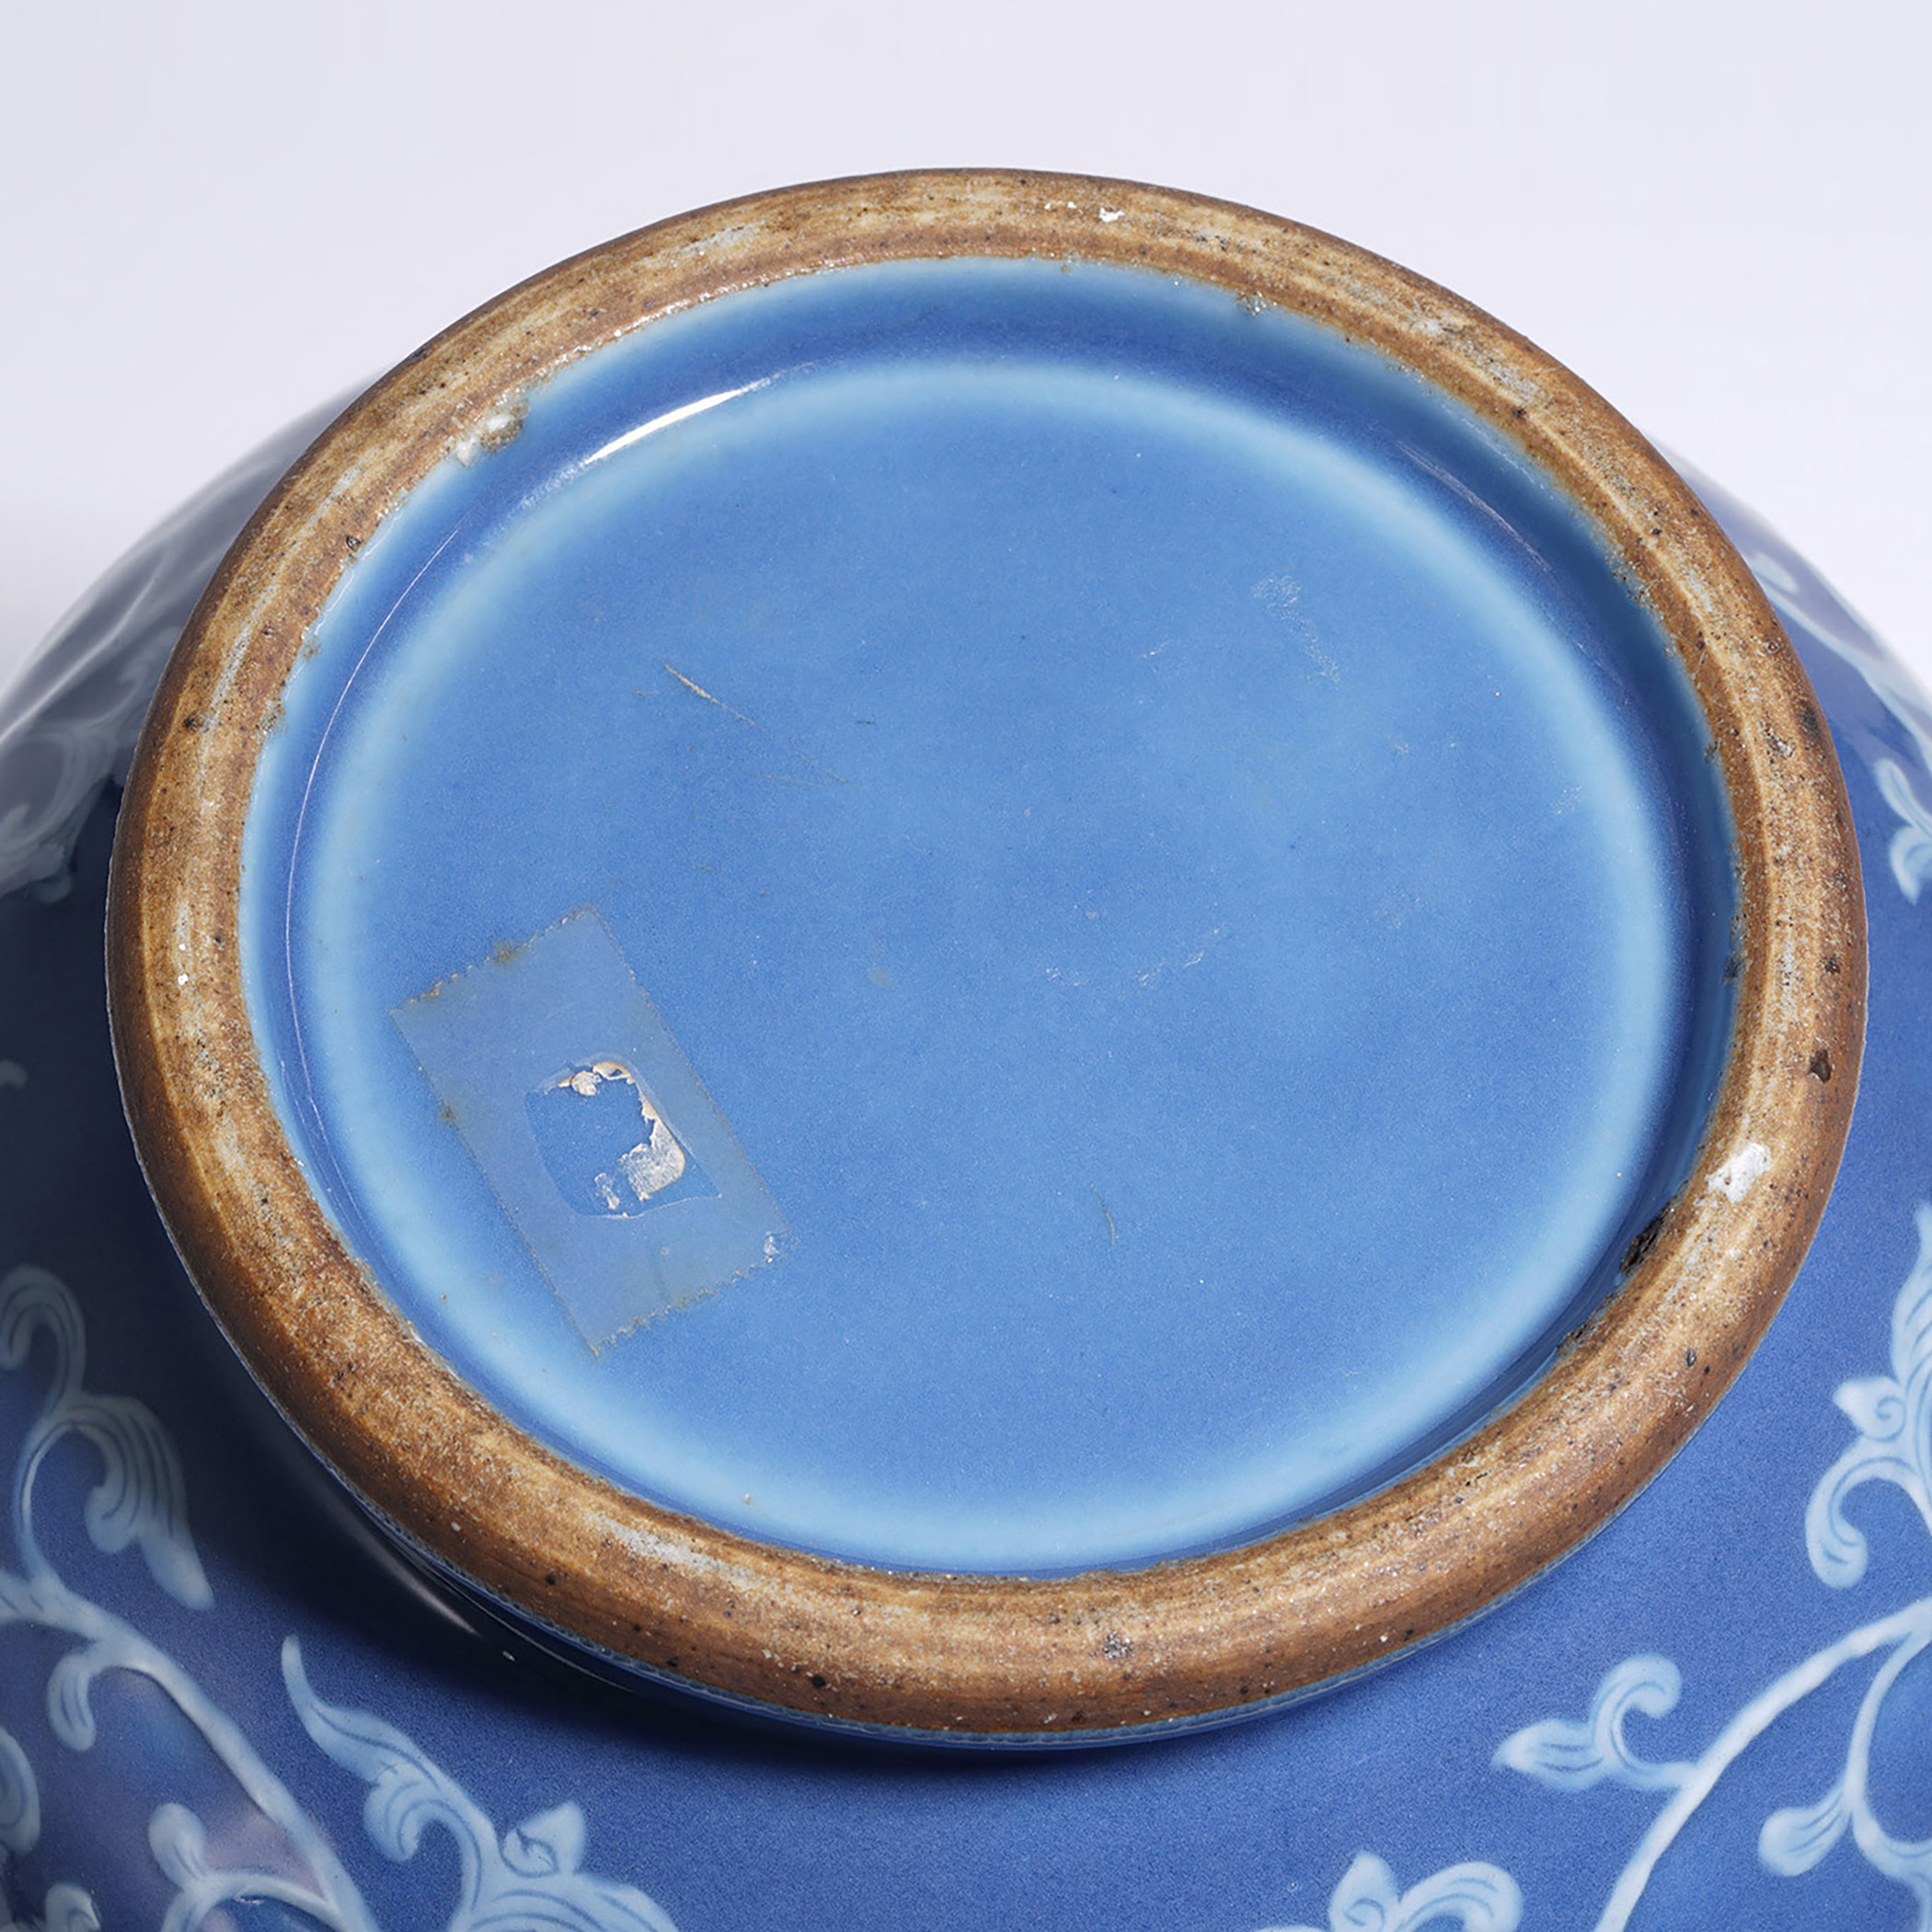 8cm拍品描述瓷品相良好来源:郭克礼珍藏说明:蓝釉堆白工艺属高温釉彩